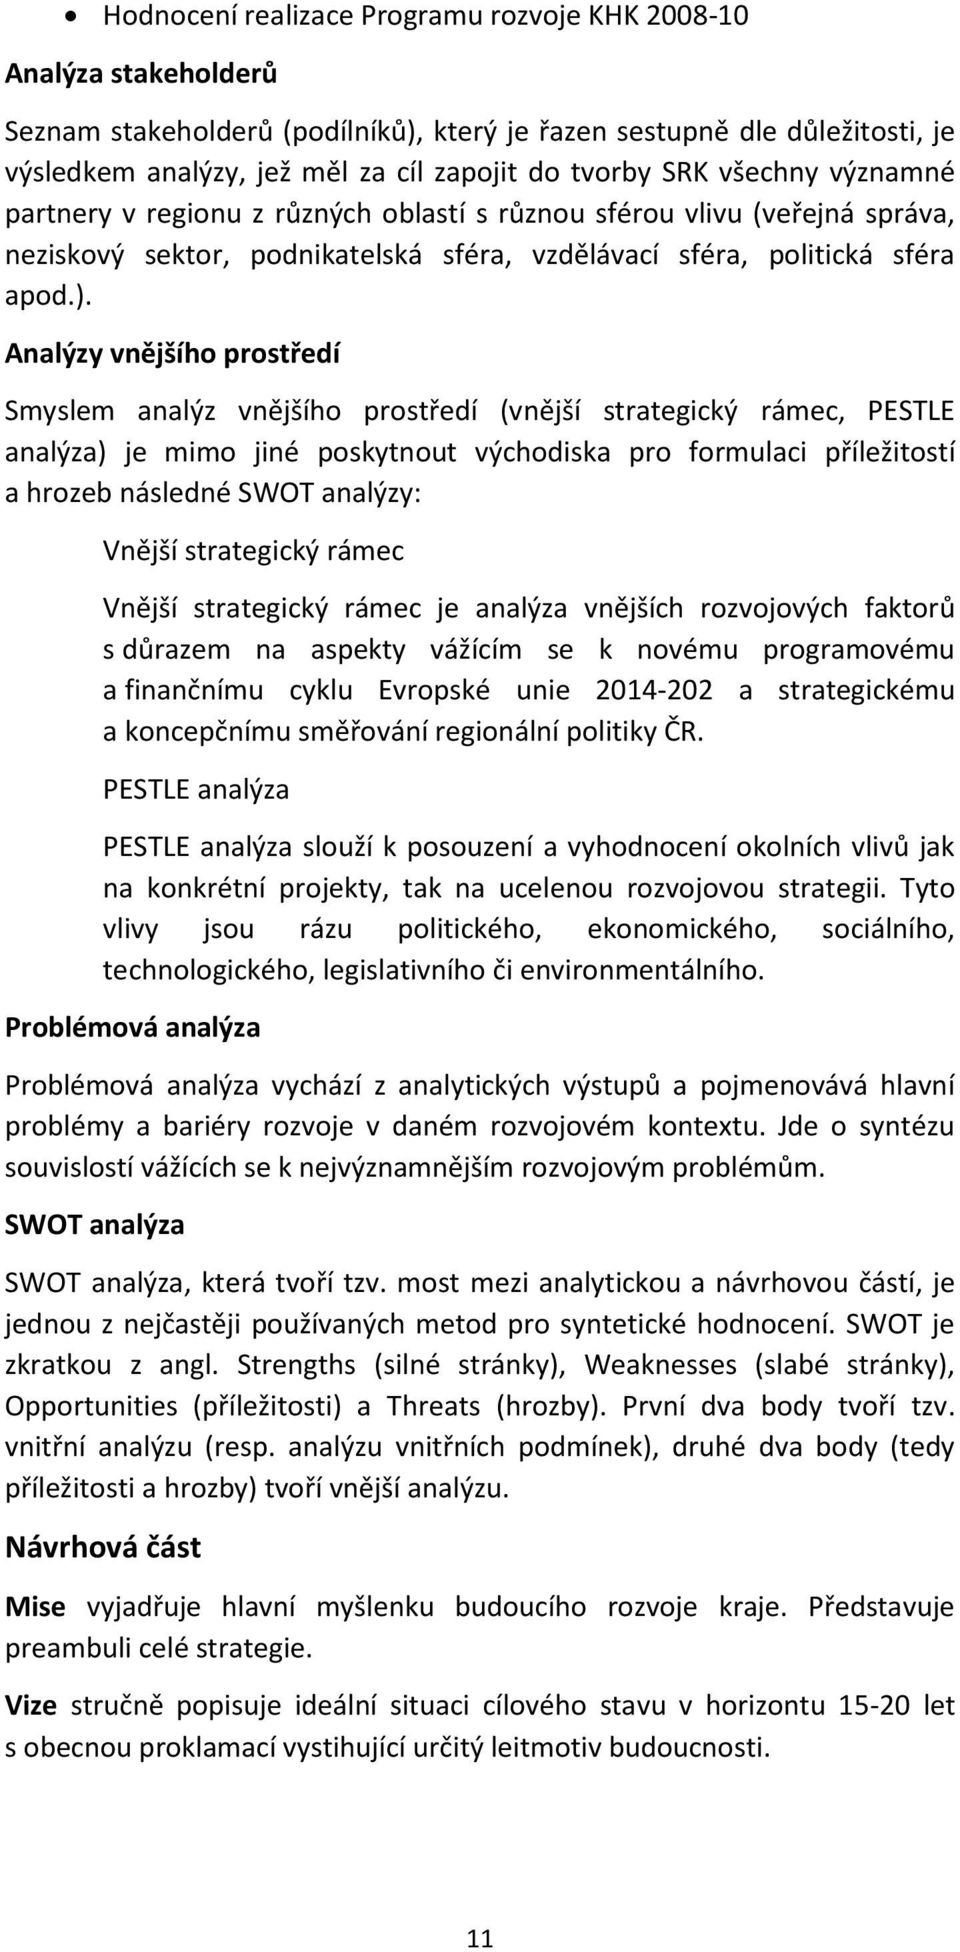 Analýzy vnějšího prostředí Smyslem analýz vnějšího prostředí (vnější strategický rámec, PESTLE analýza) je mimo jiné poskytnout východiska pro formulaci příležitostí a hrozeb následné SWOT analýzy: